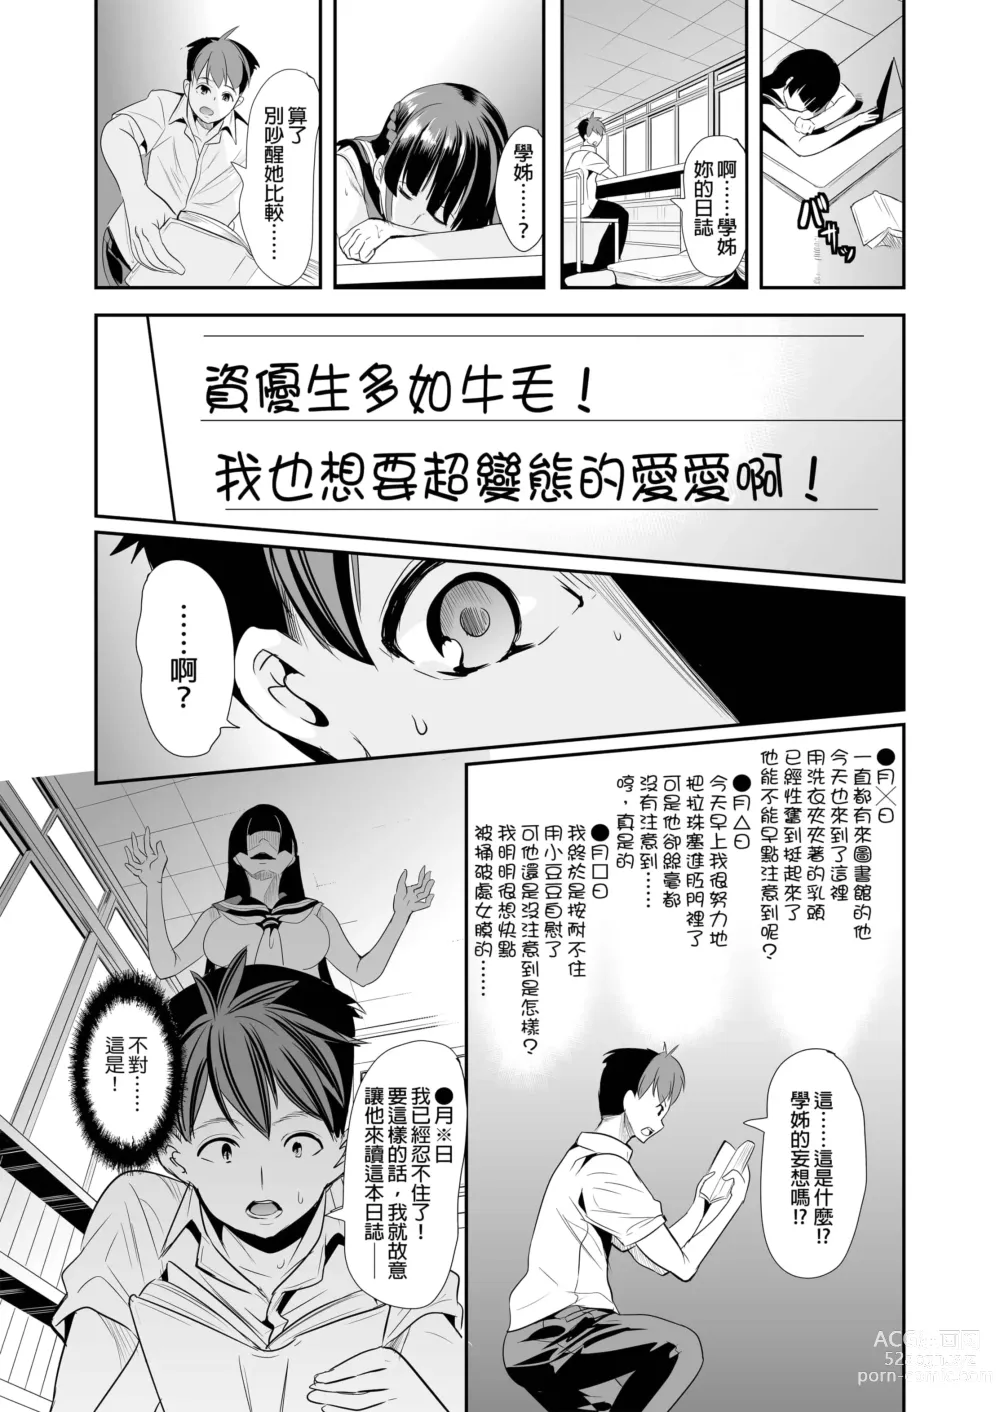 Page 8 of doujinshi ハーレムは彼女の匂い +  妻のNGが無くなっていく整合